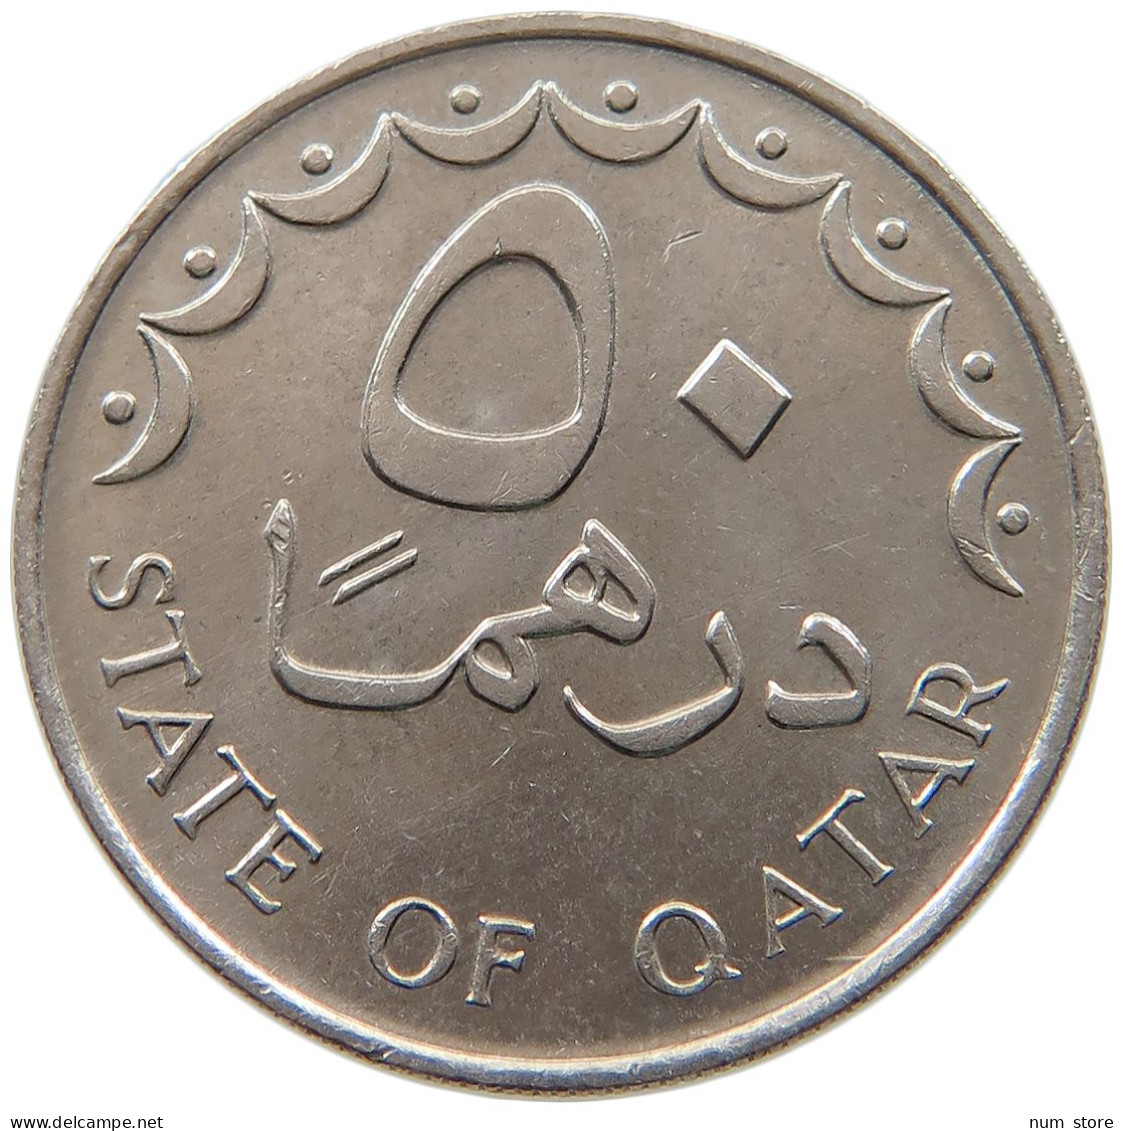 QATAR 50 DIRHAMS 1987  #a037 0321 - Qatar